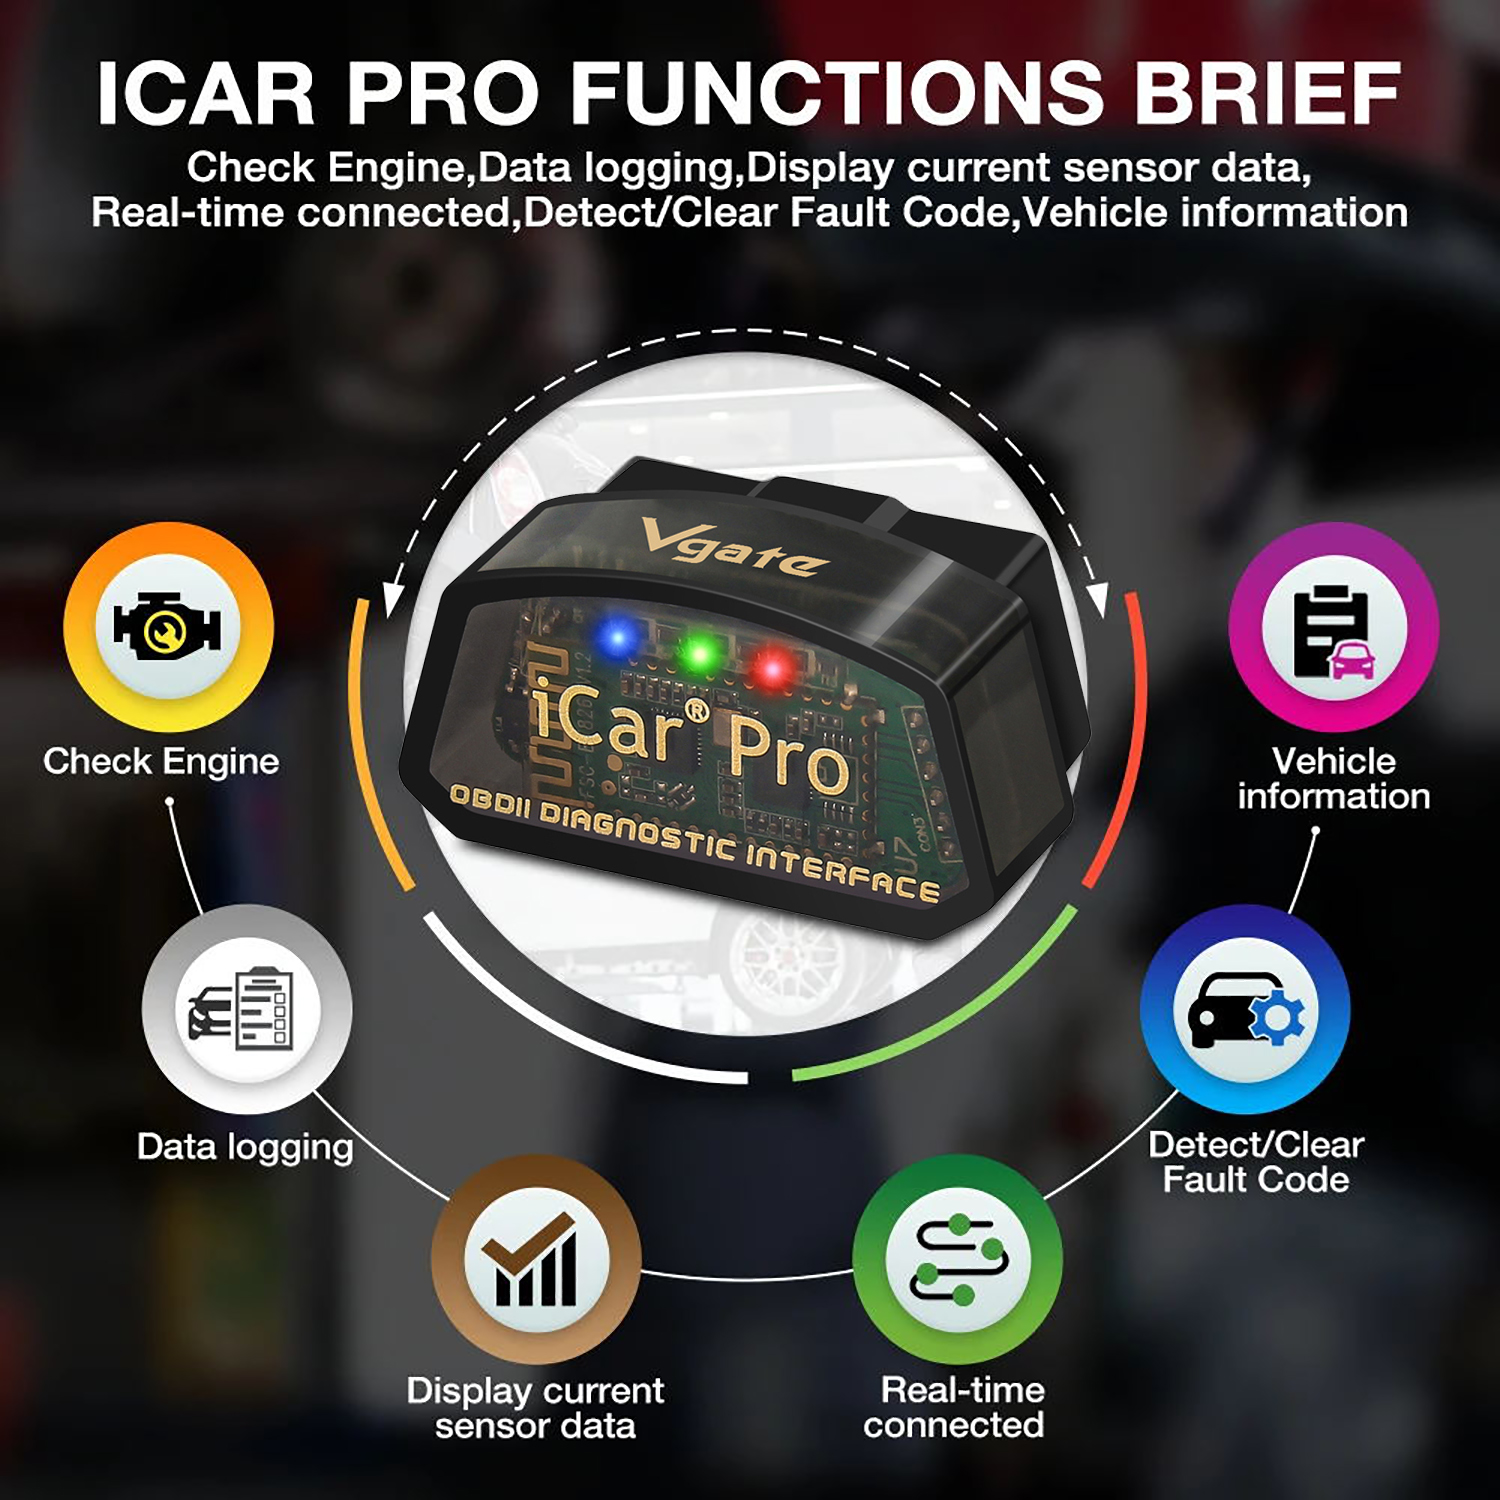 Vgate iCar Pro BT3.0